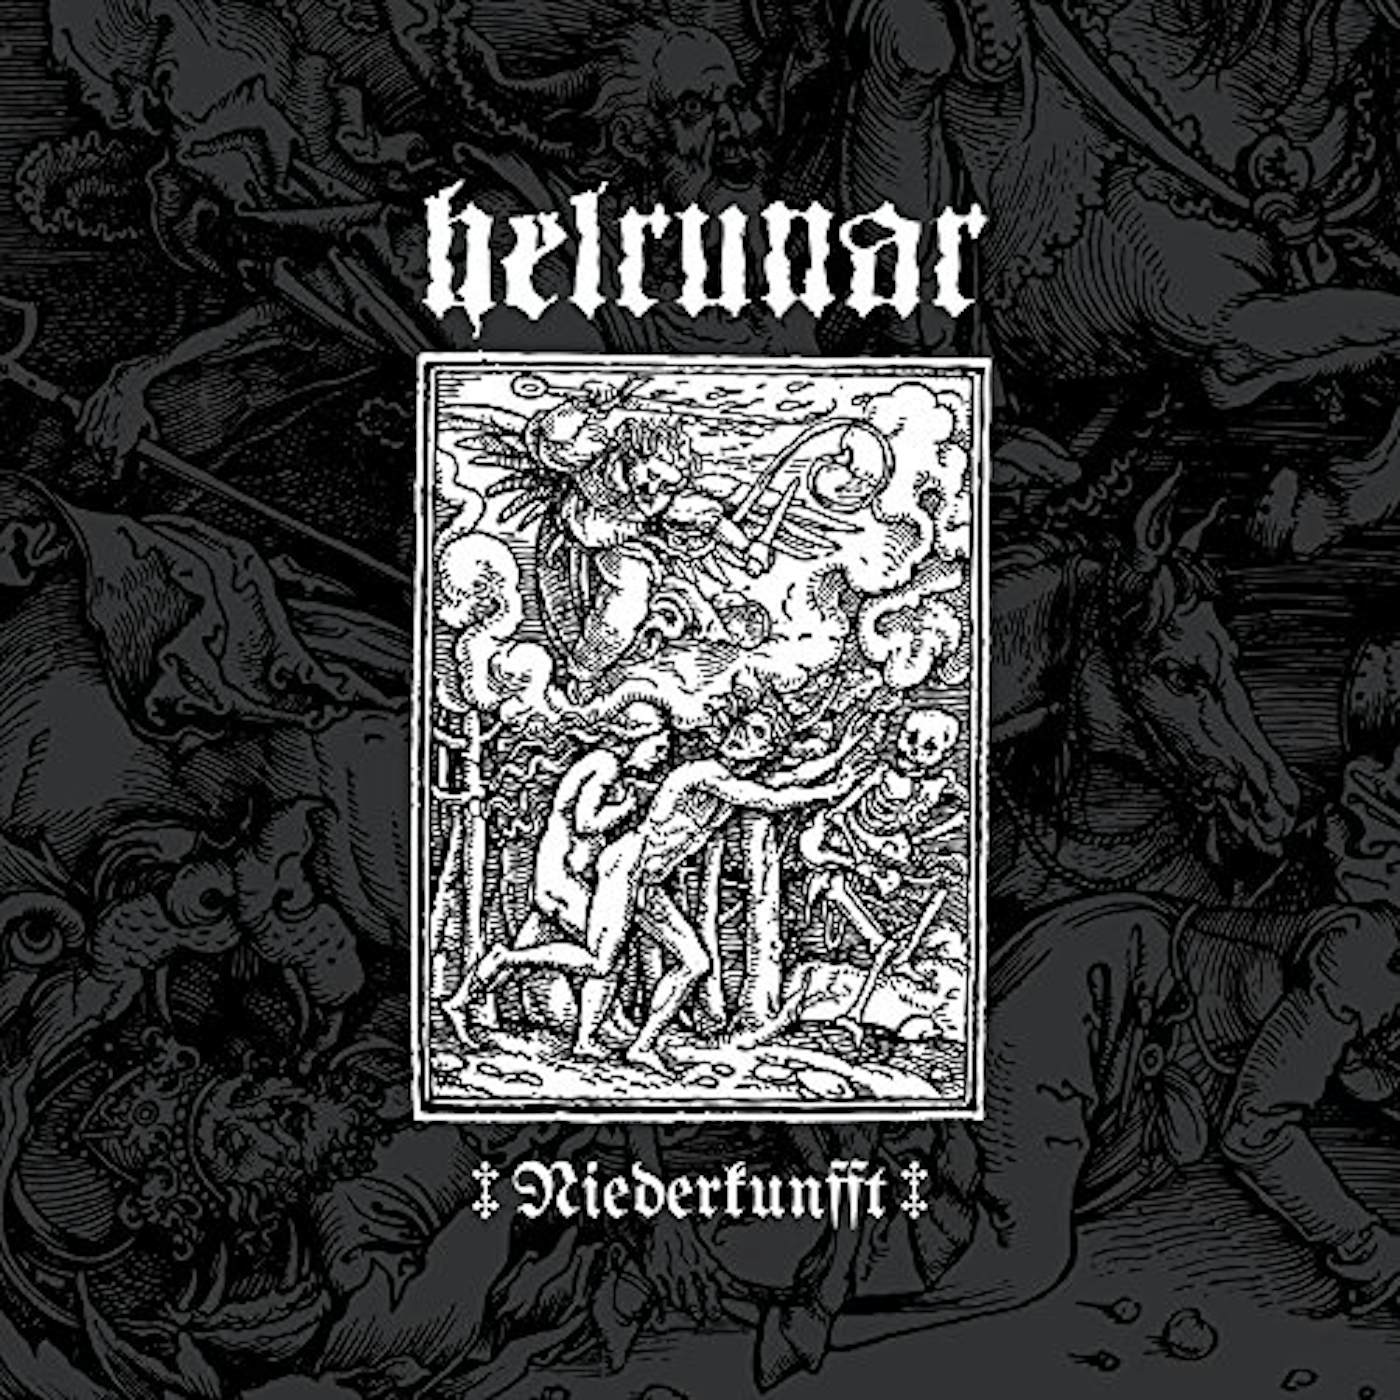 Helrunar Niederkunfft Vinyl Record